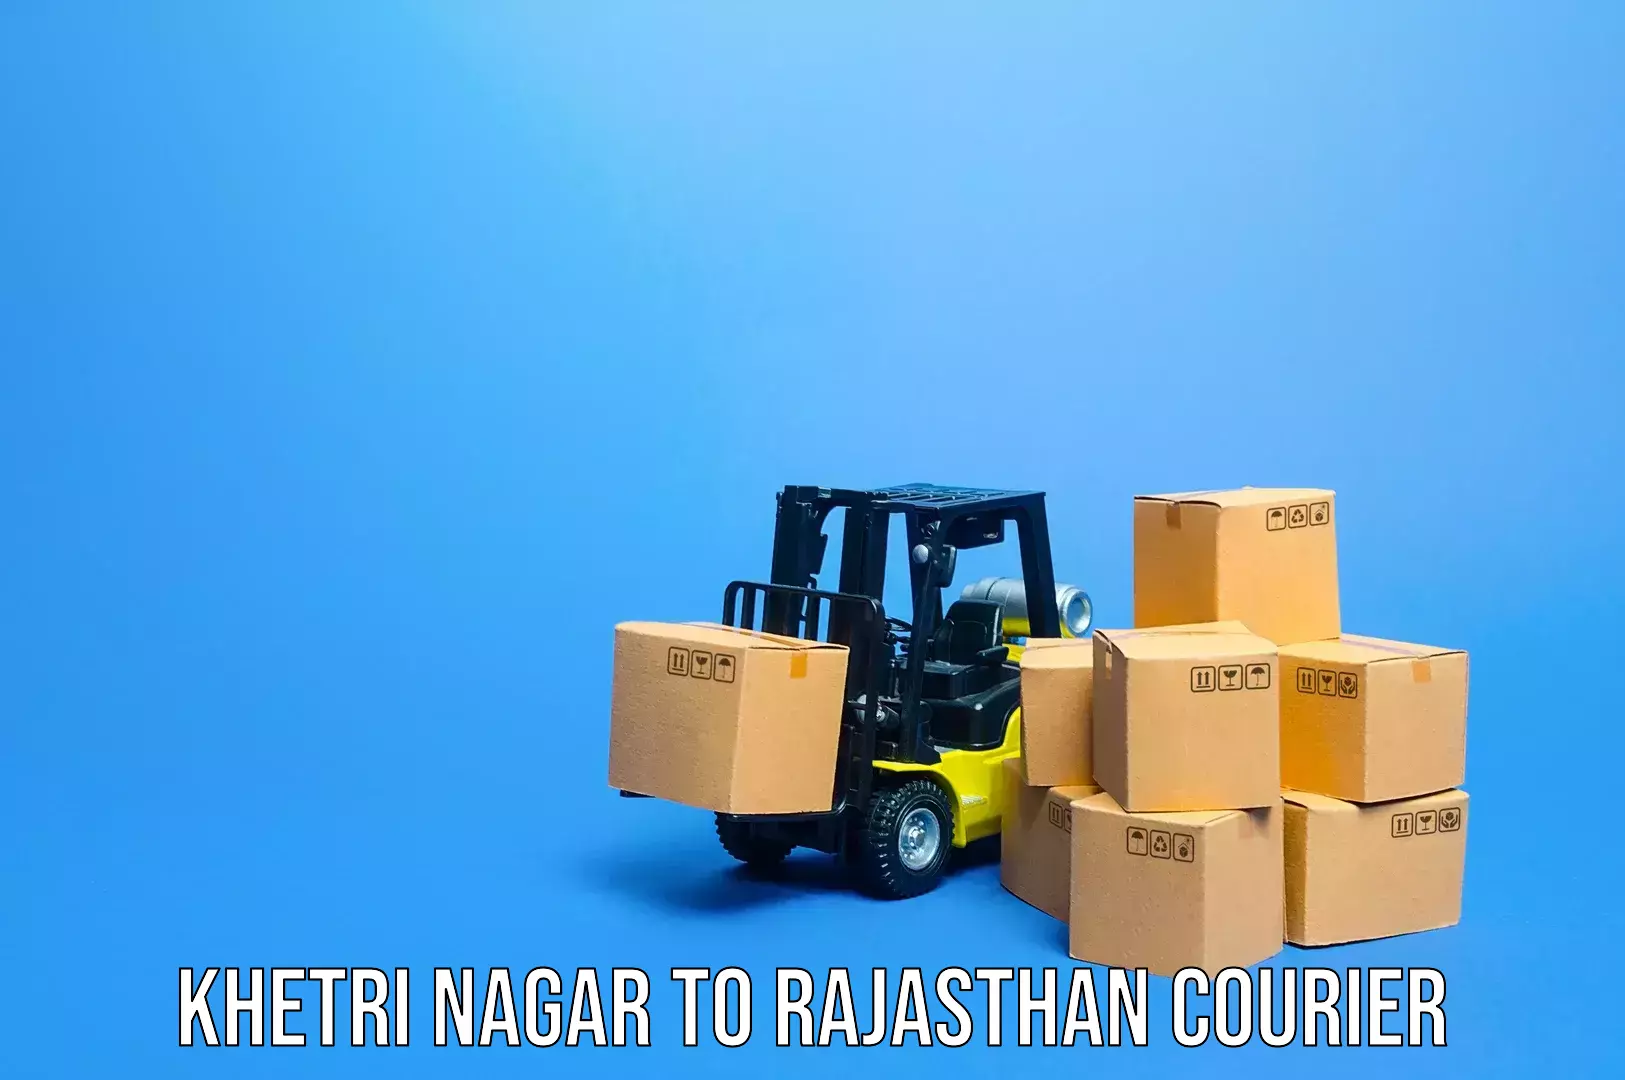 Luggage shipment tracking Khetri Nagar to Kekri